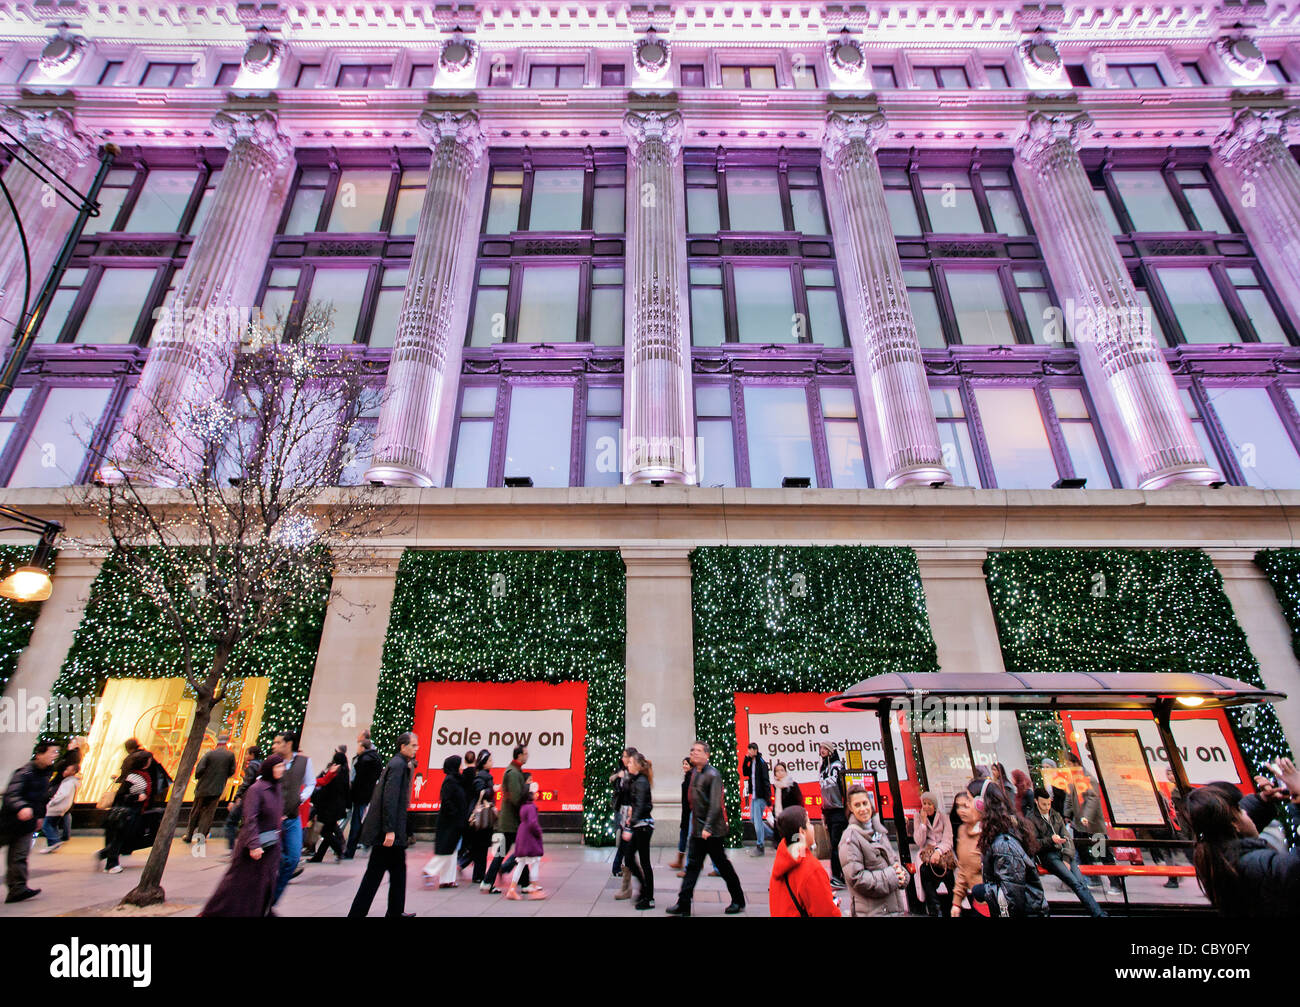 Bargain-foule chasse file d'attente pour le lendemain de la vente au magasin Selfridges, Londres ; Angleterre ; Royaume-Uni ; Europe Banque D'Images